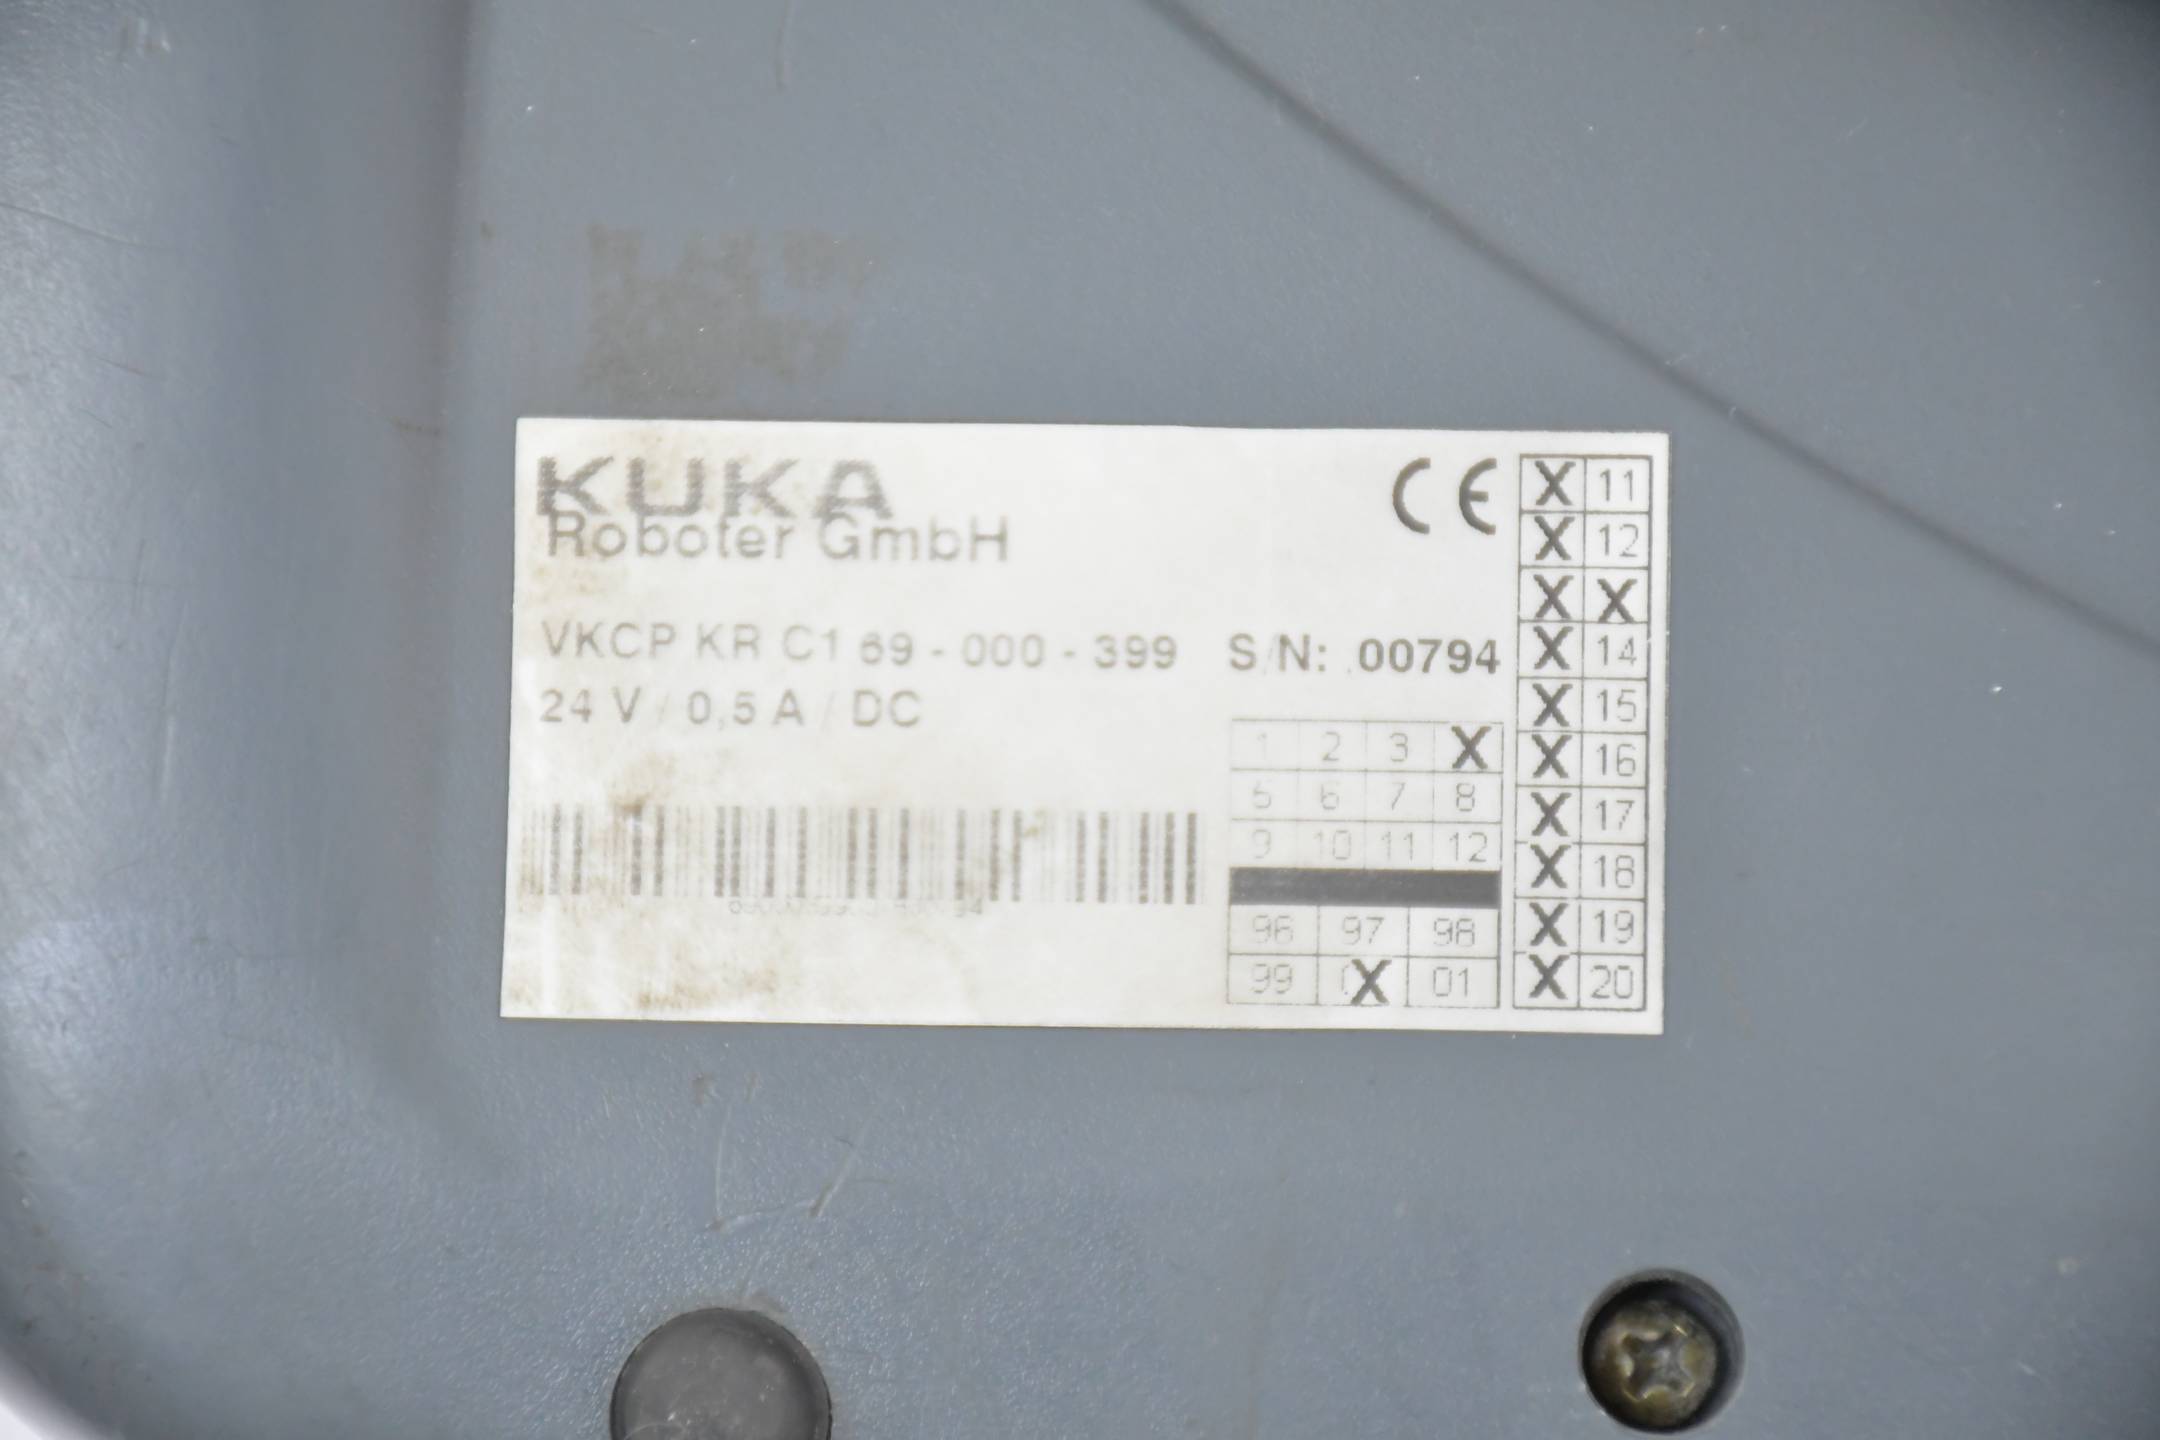 Kuka VKCP KR C1 69-000-399 24V / 0,5A / DC